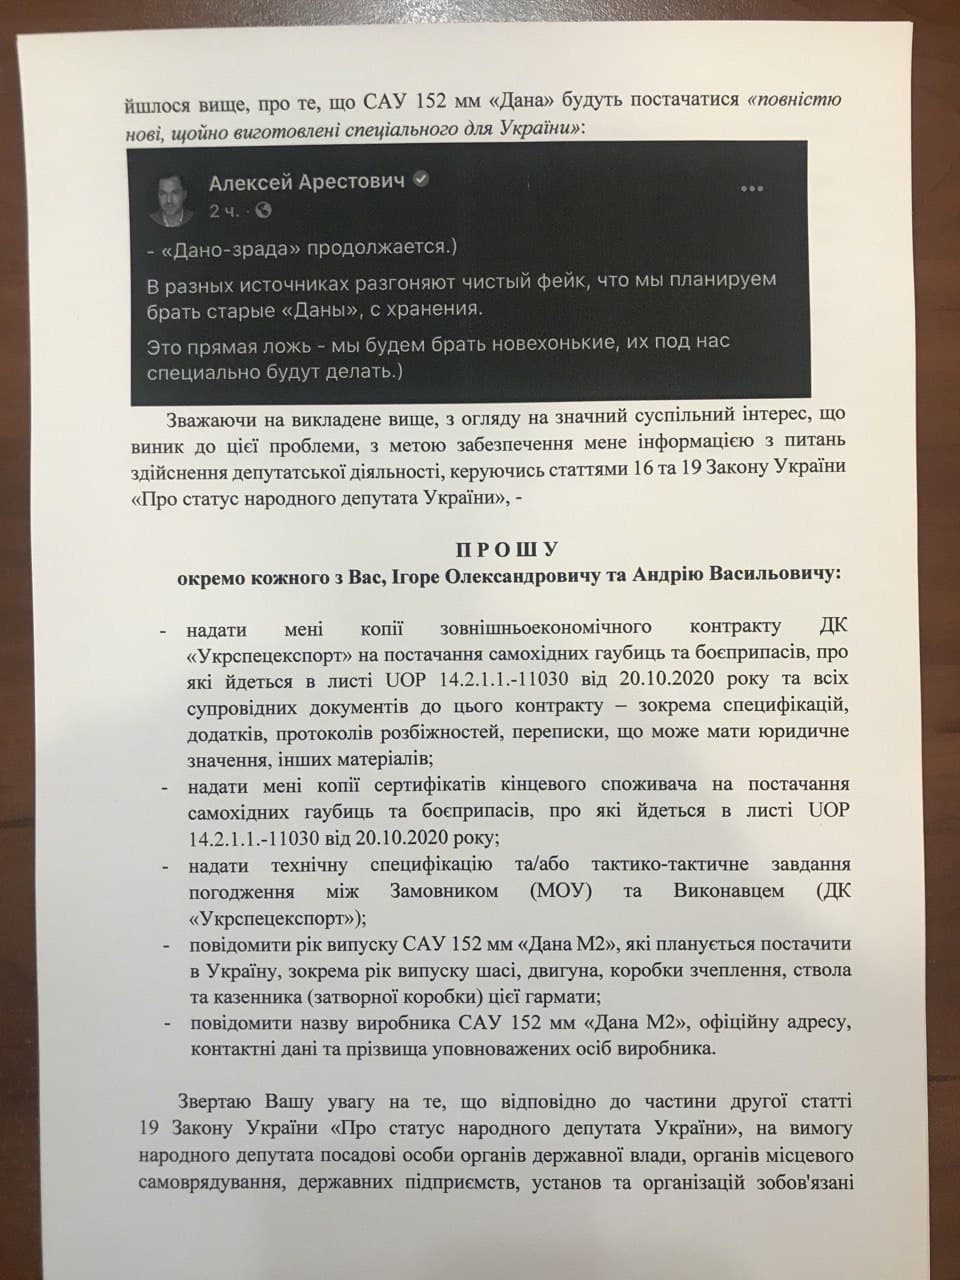 Контракт на чеські САУ Дана М2 було укладено 20 жовтня